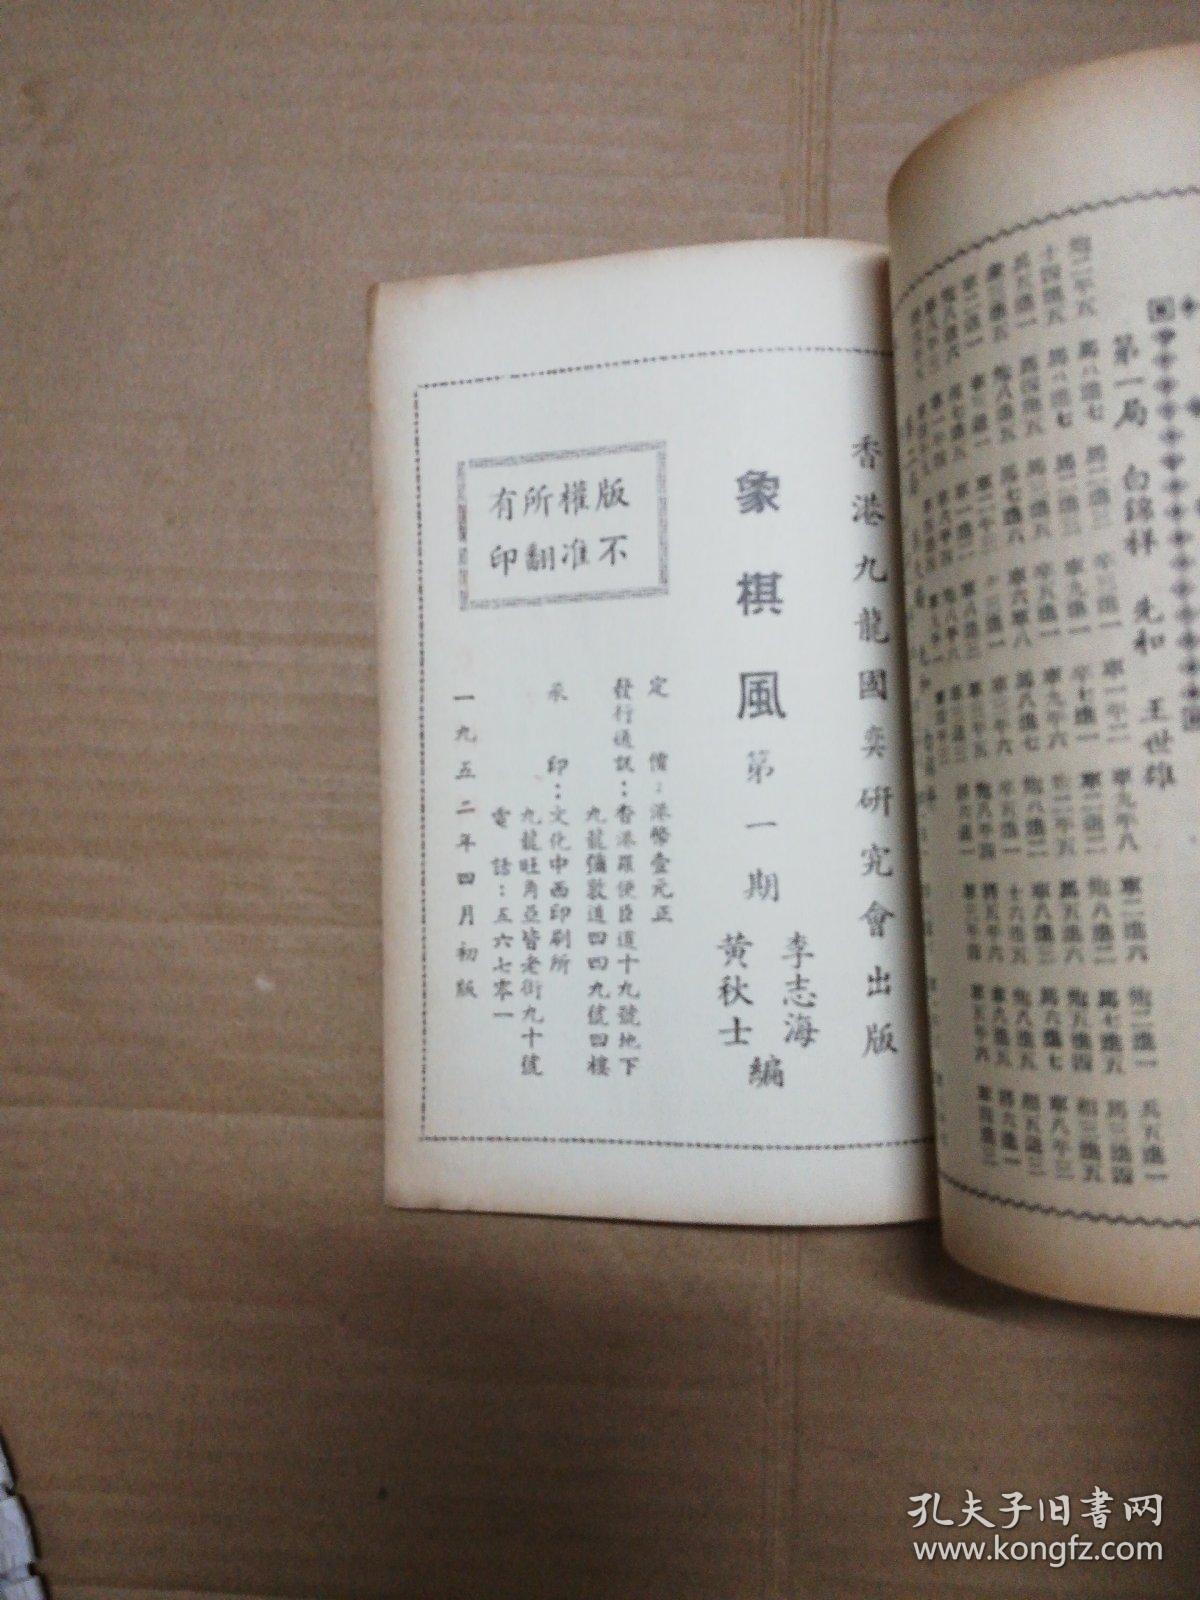 老象棋谱: 象棋风 (第一期)1952年初版